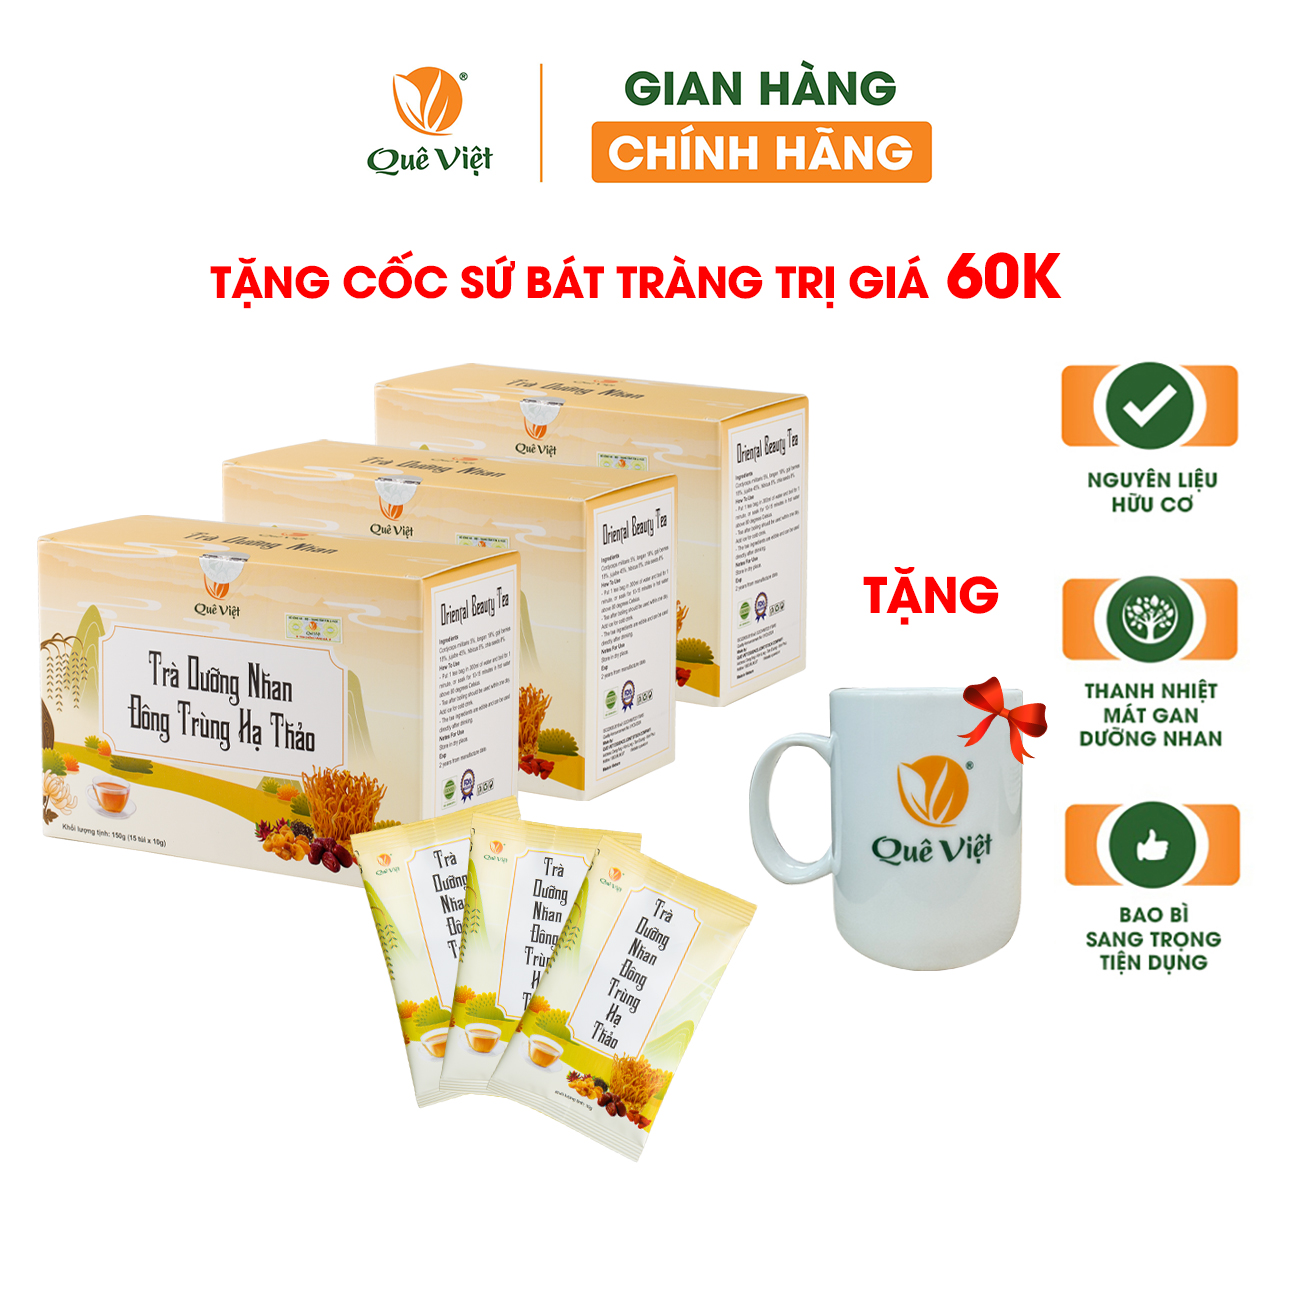 Combo 3 hộp - Tra dưỡng nhan đông trùng hạ thảo Quê Việt + tặng 1 cốc gốm sứ bát tràng - Hộp 150g (10g x 15 túi)